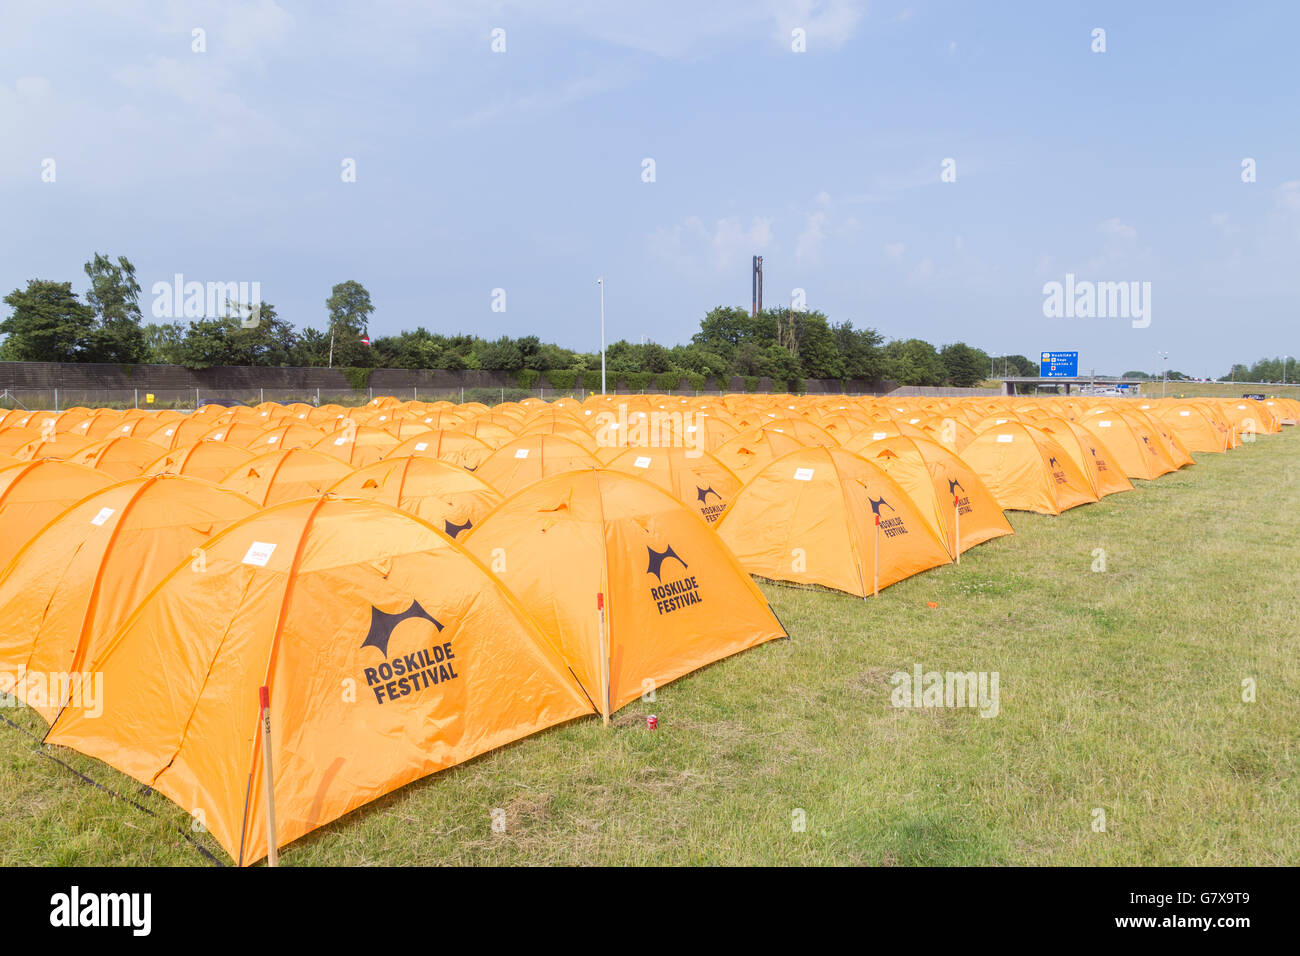 Roskilde, Dinamarca - 25 de junio de 2016: filas de carpas de color naranja en el Festival de Roskilde 2016 Foto de stock